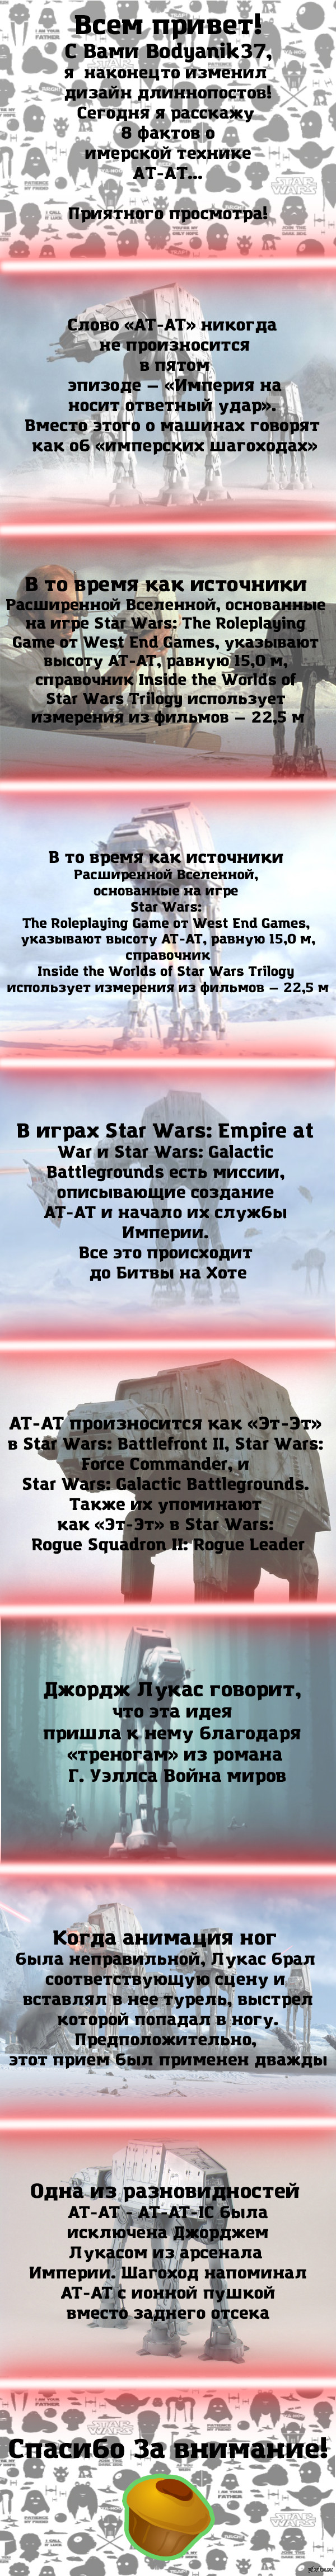 Интересные факты «Star Wars»: AT-AT 